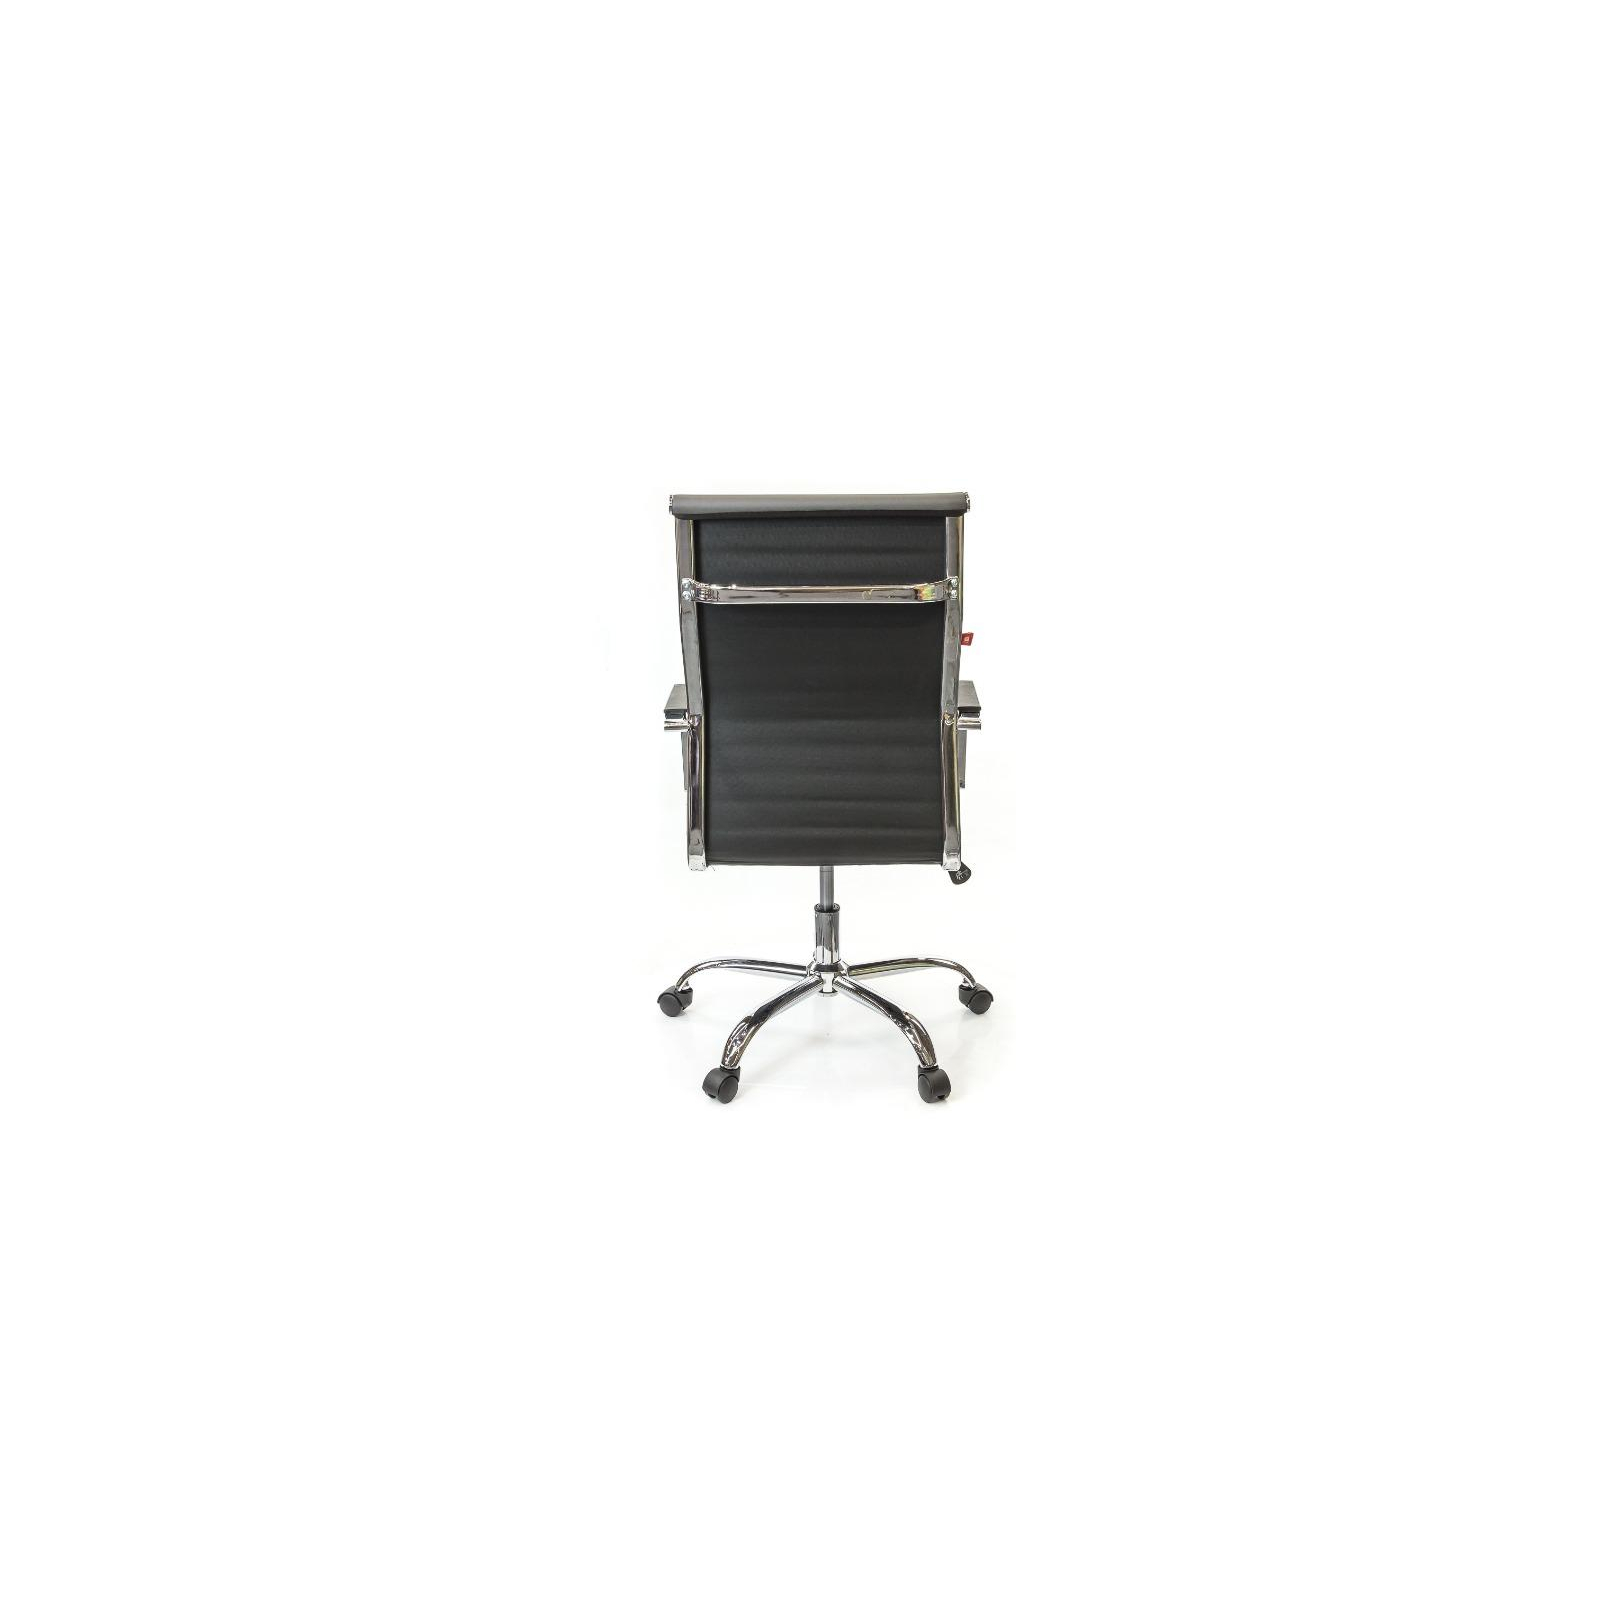 Офісне крісло Аклас Кап FX СН TILT Оранжевое (09905) зображення 5